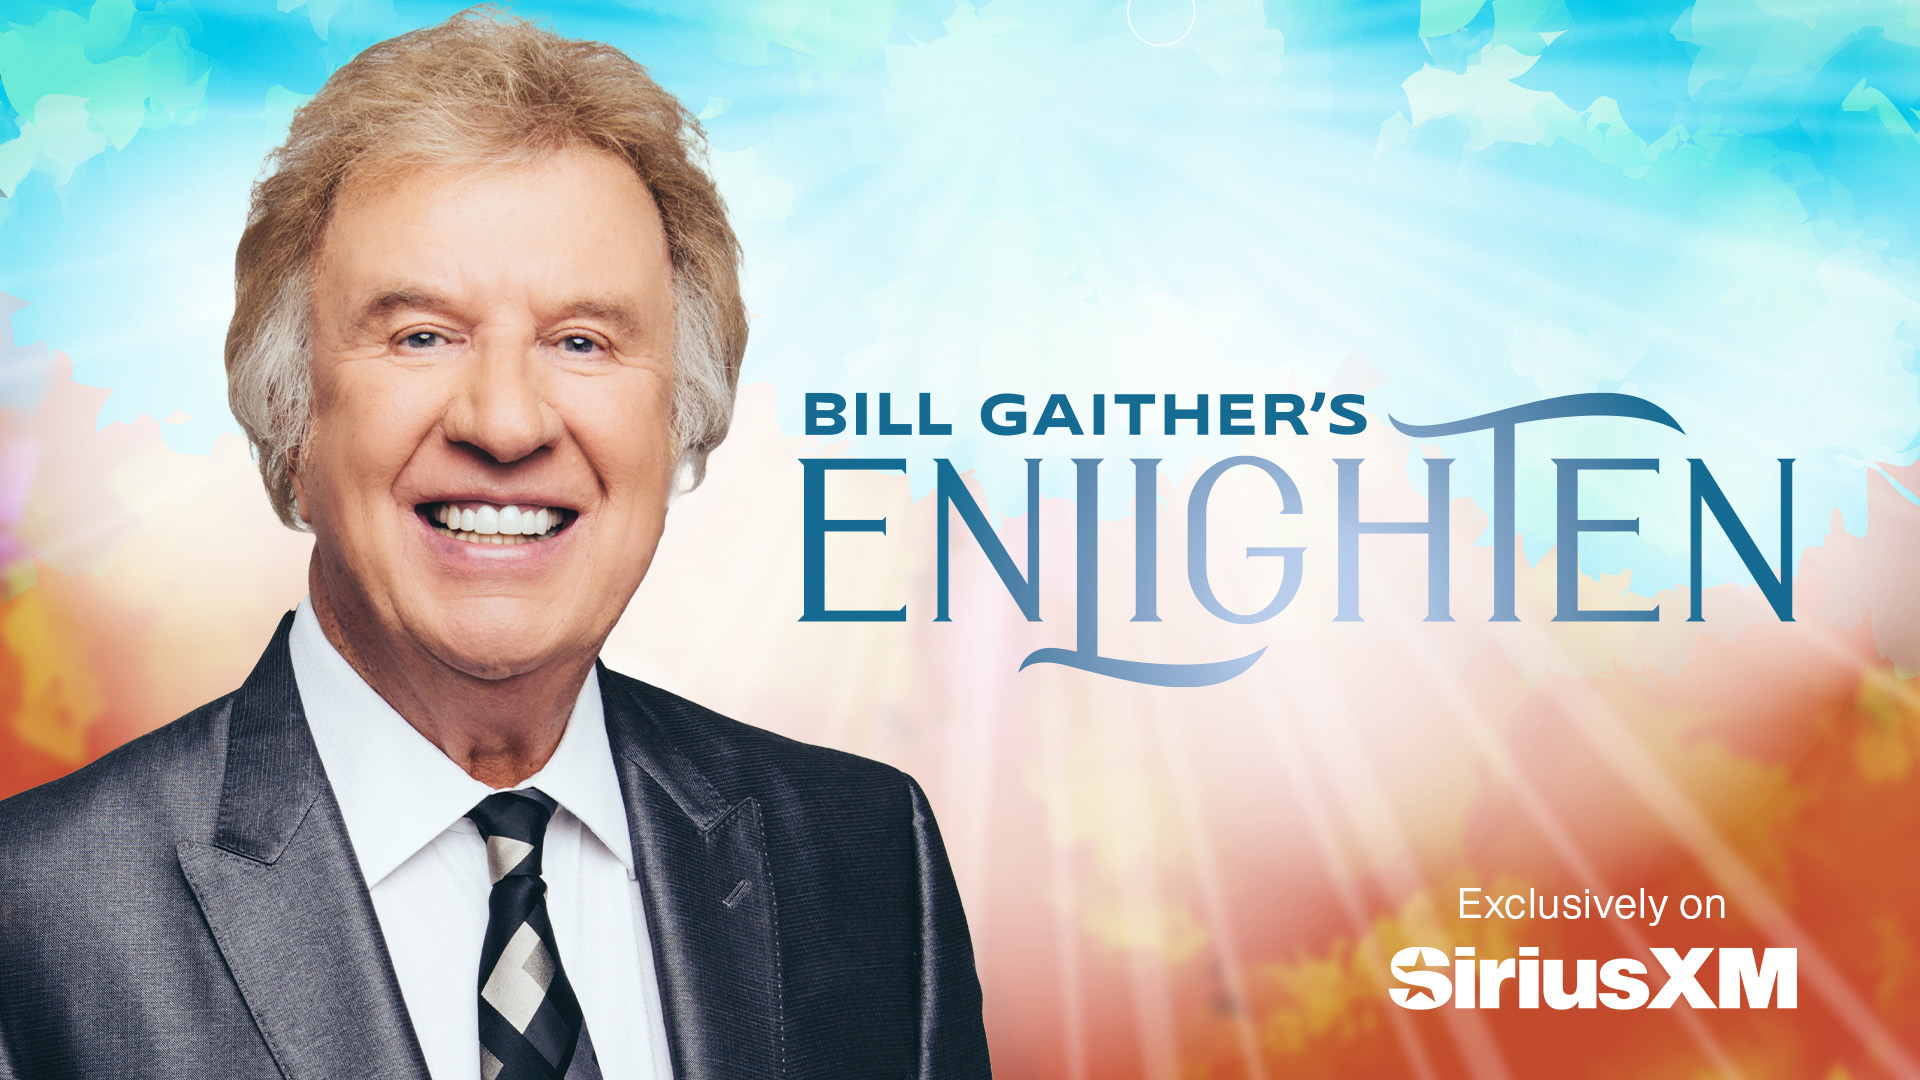 Bill Gaither's enLighten channel exclusively on SiriusXM